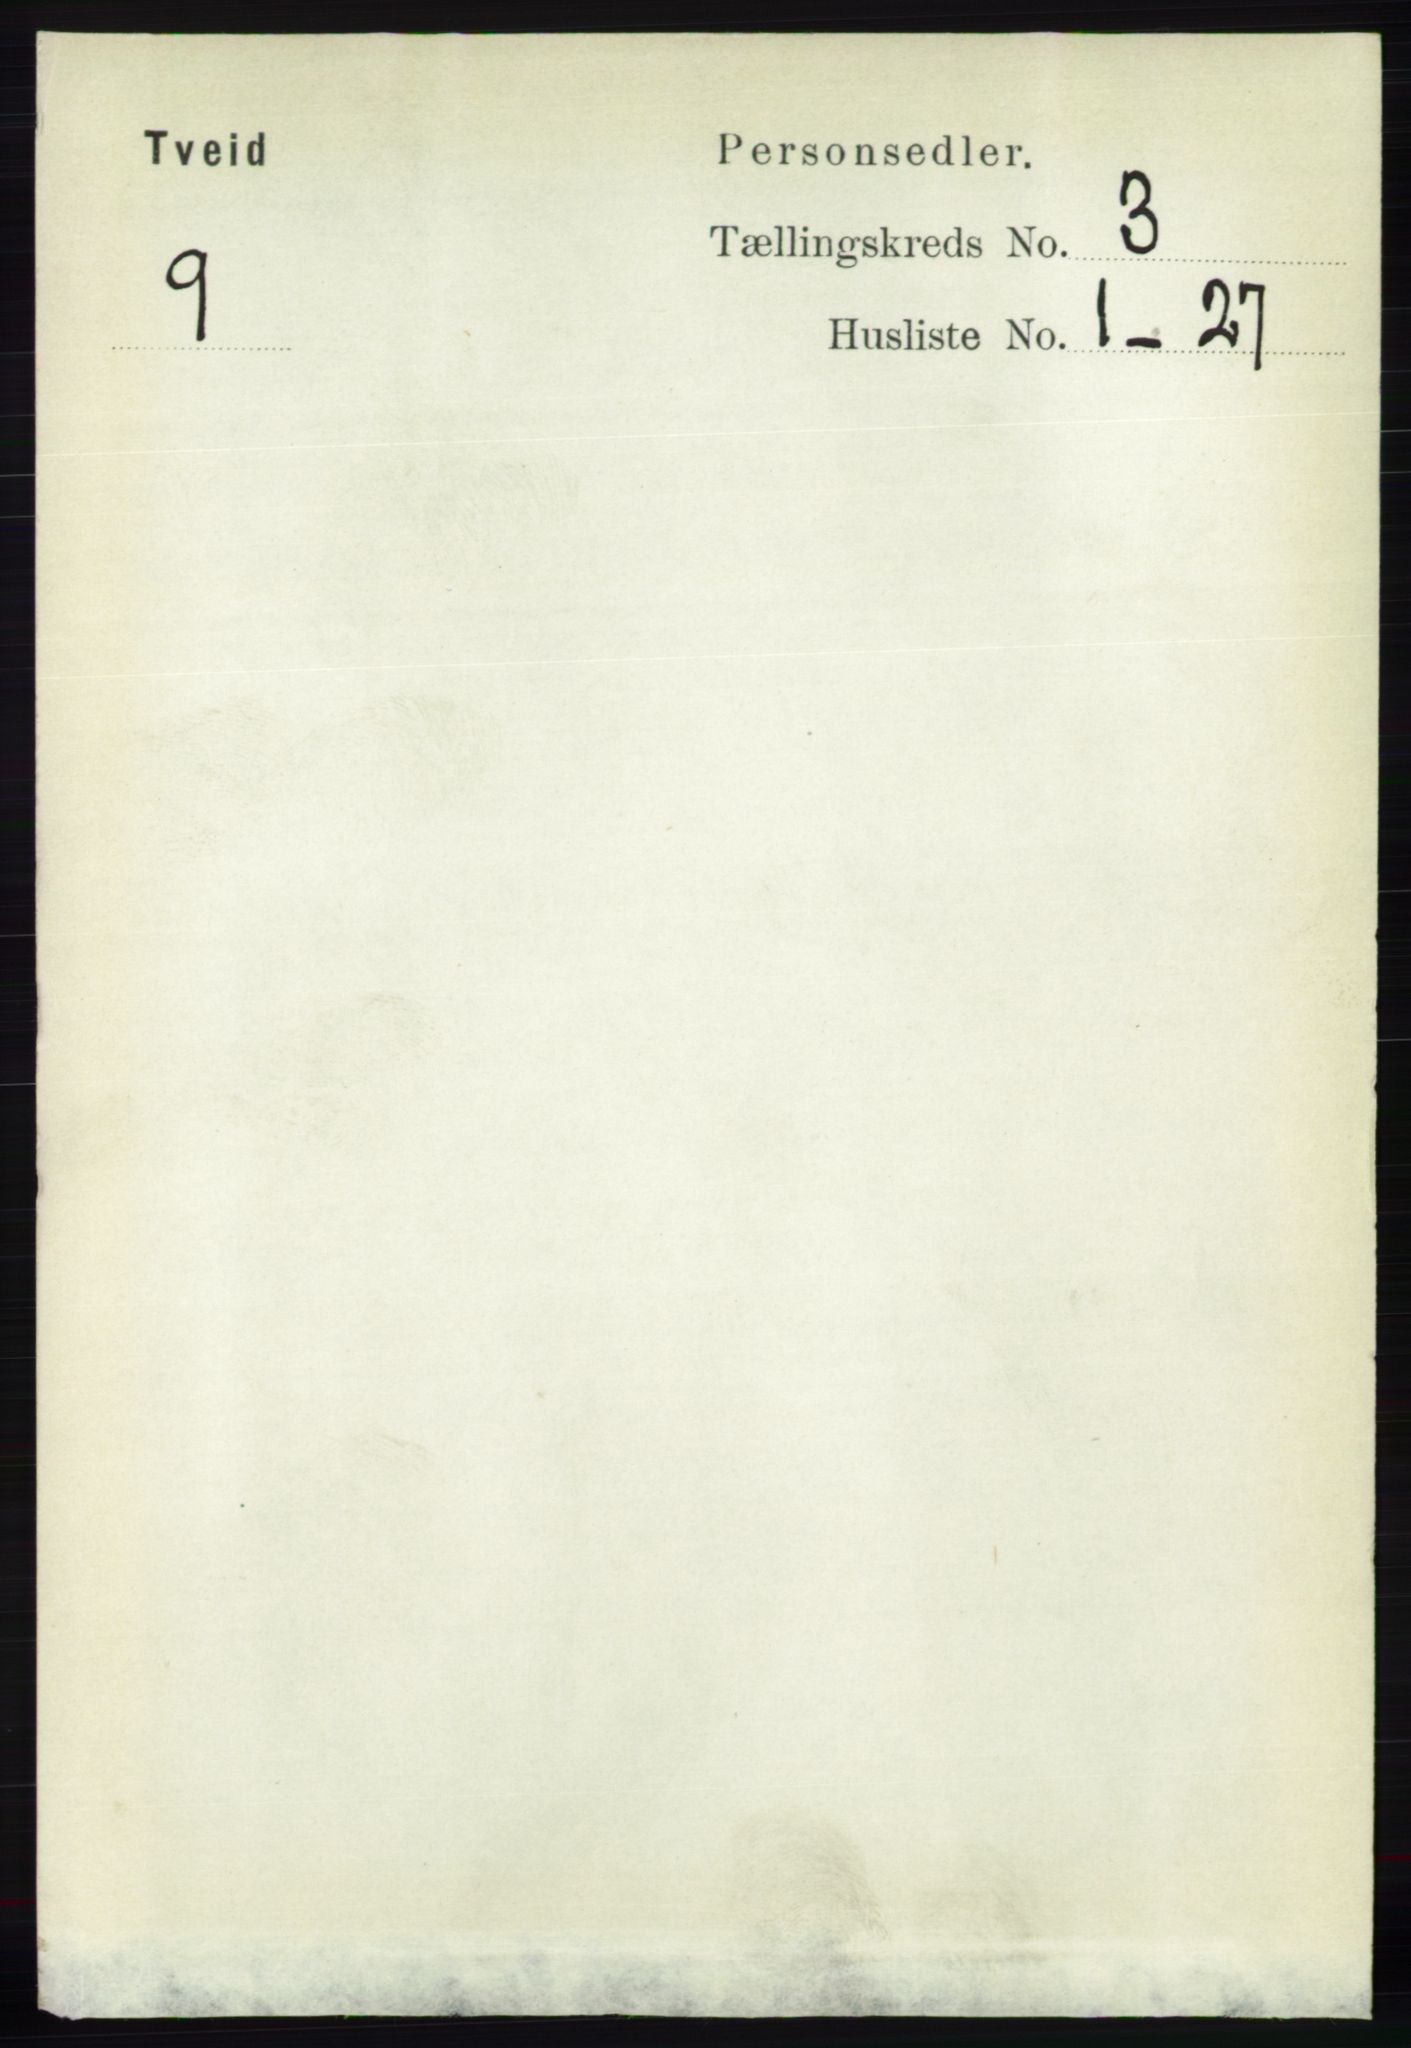 RA, Folketelling 1891 for 1013 Tveit herred, 1891, s. 1180